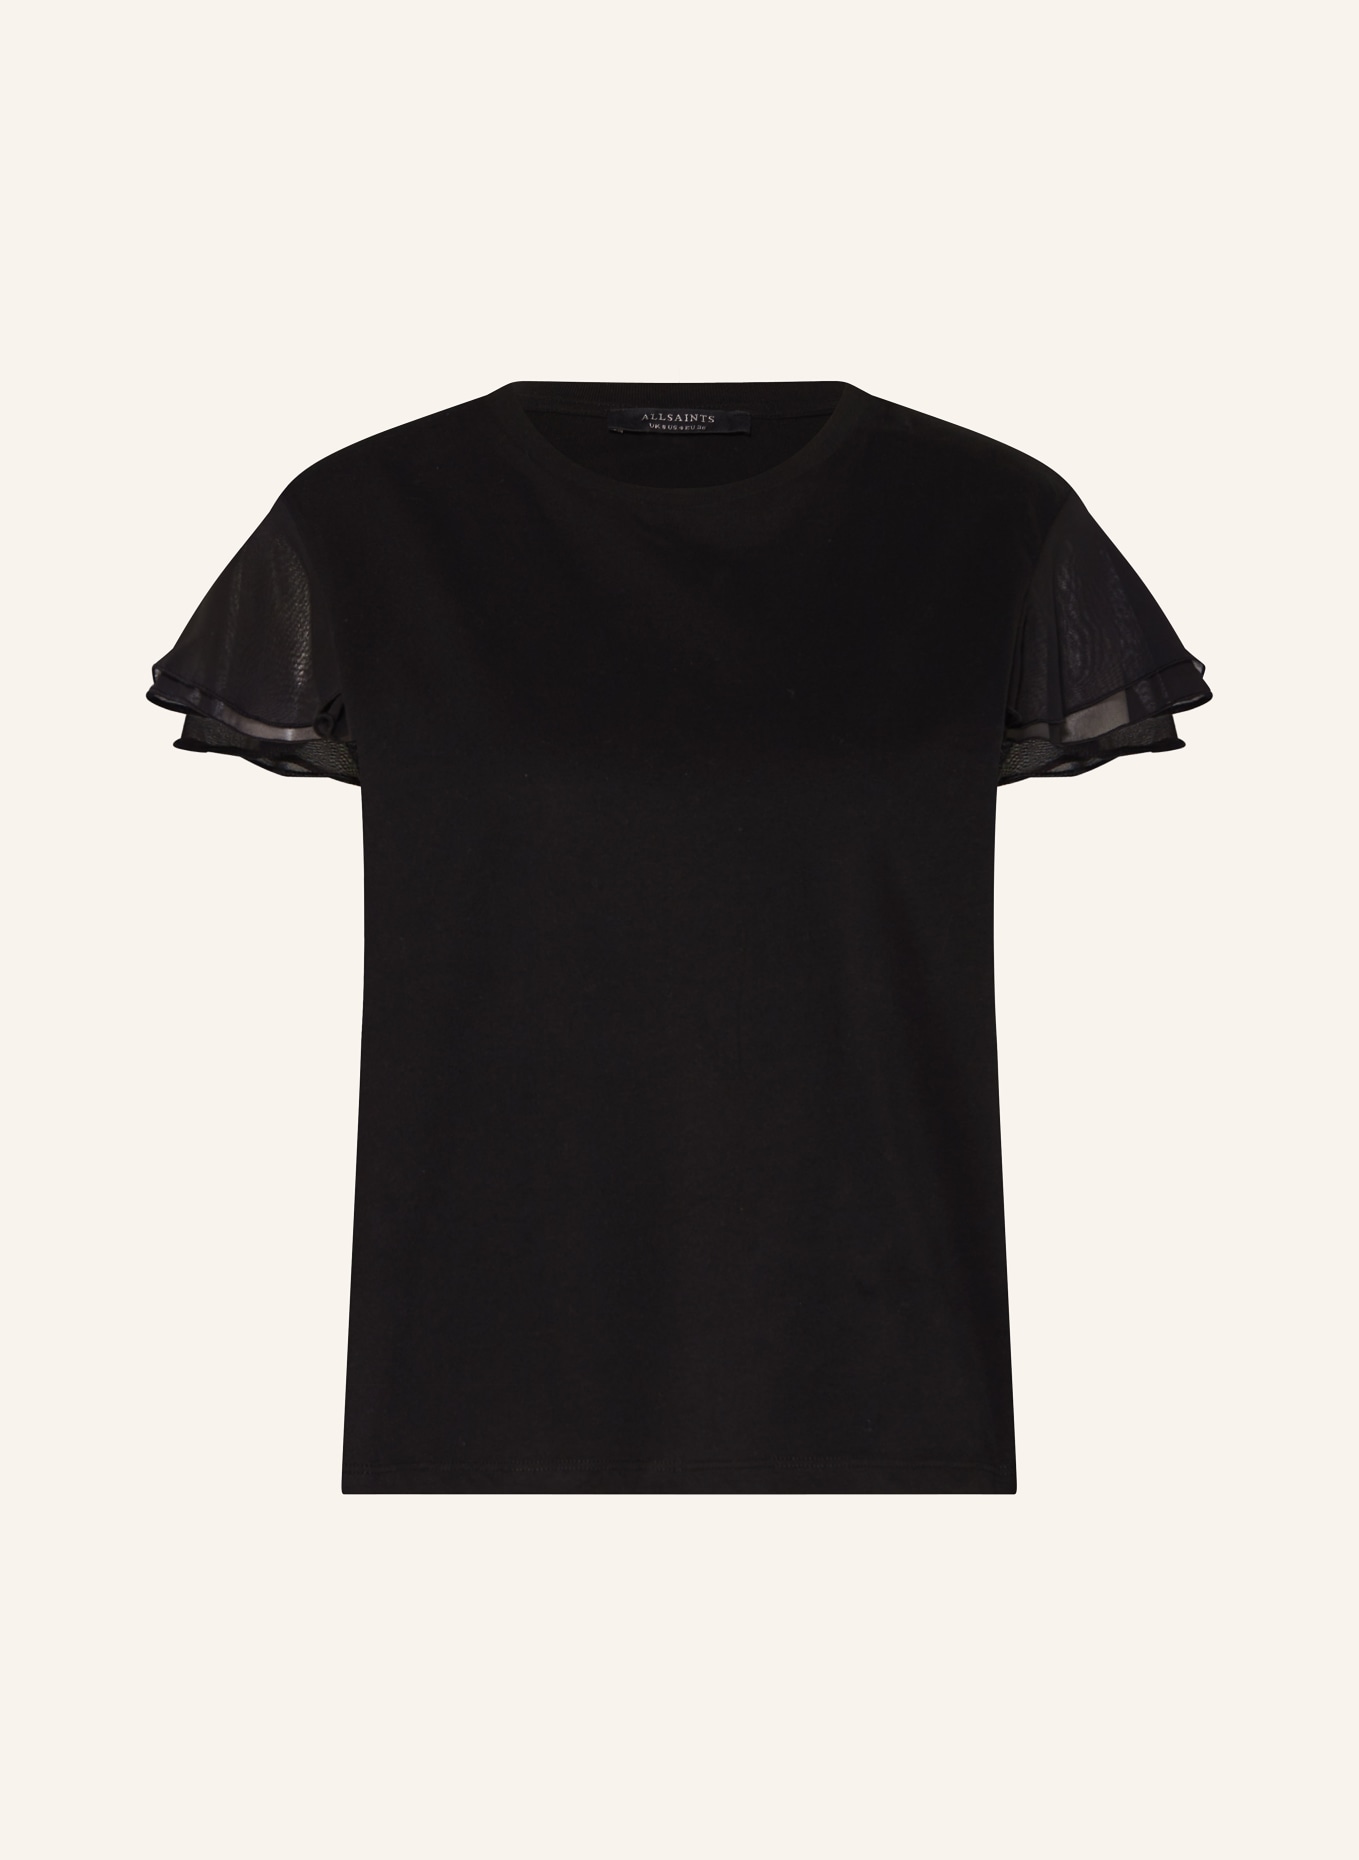 ALLSAINTS T-shirt ISABEL with frills, Color: BLACK (Image 1)